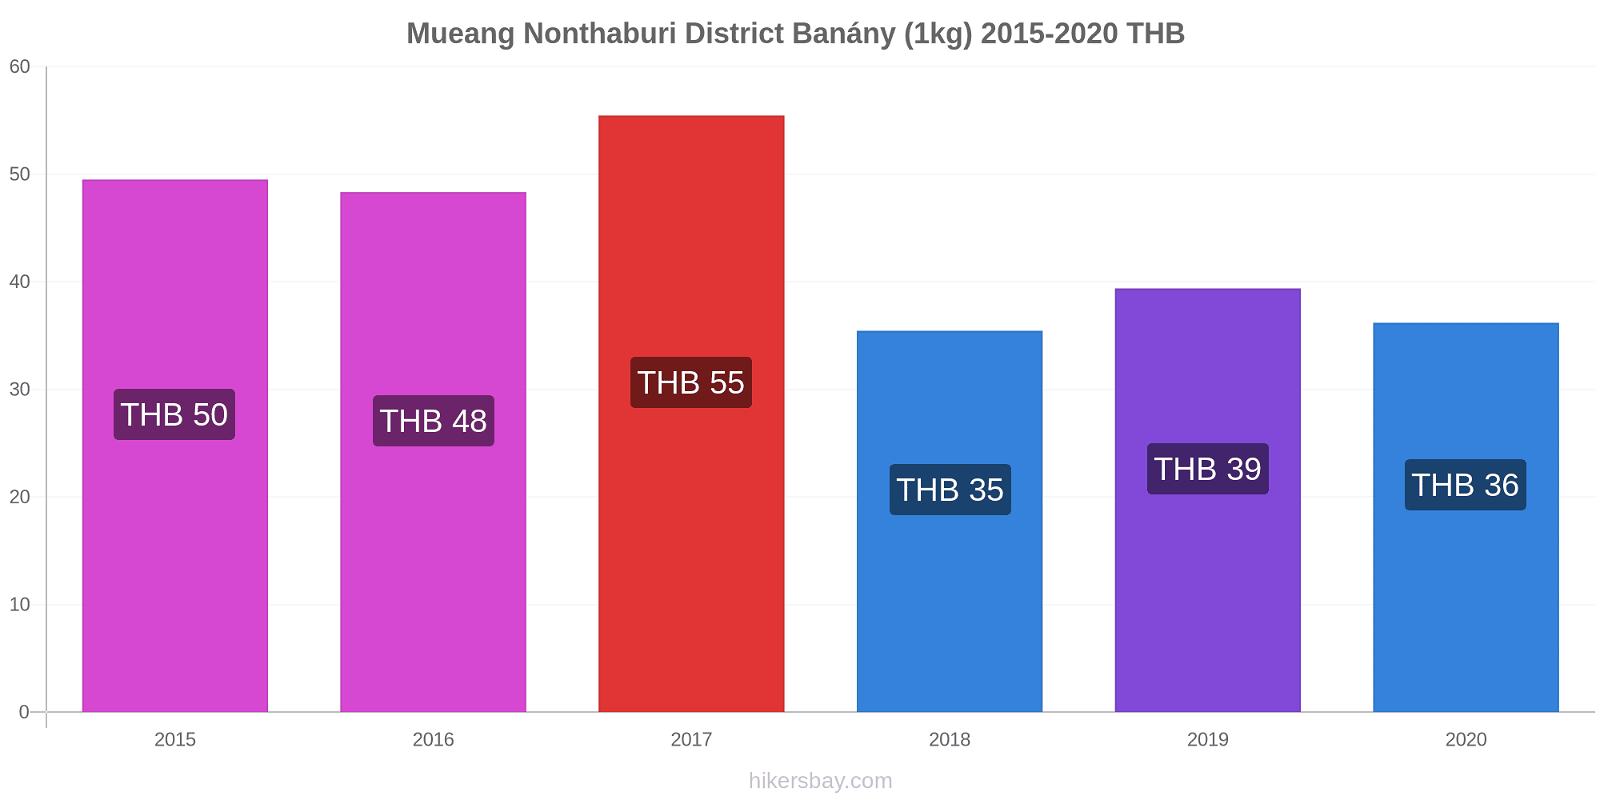 Mueang Nonthaburi District změny cen Banány (1kg) hikersbay.com